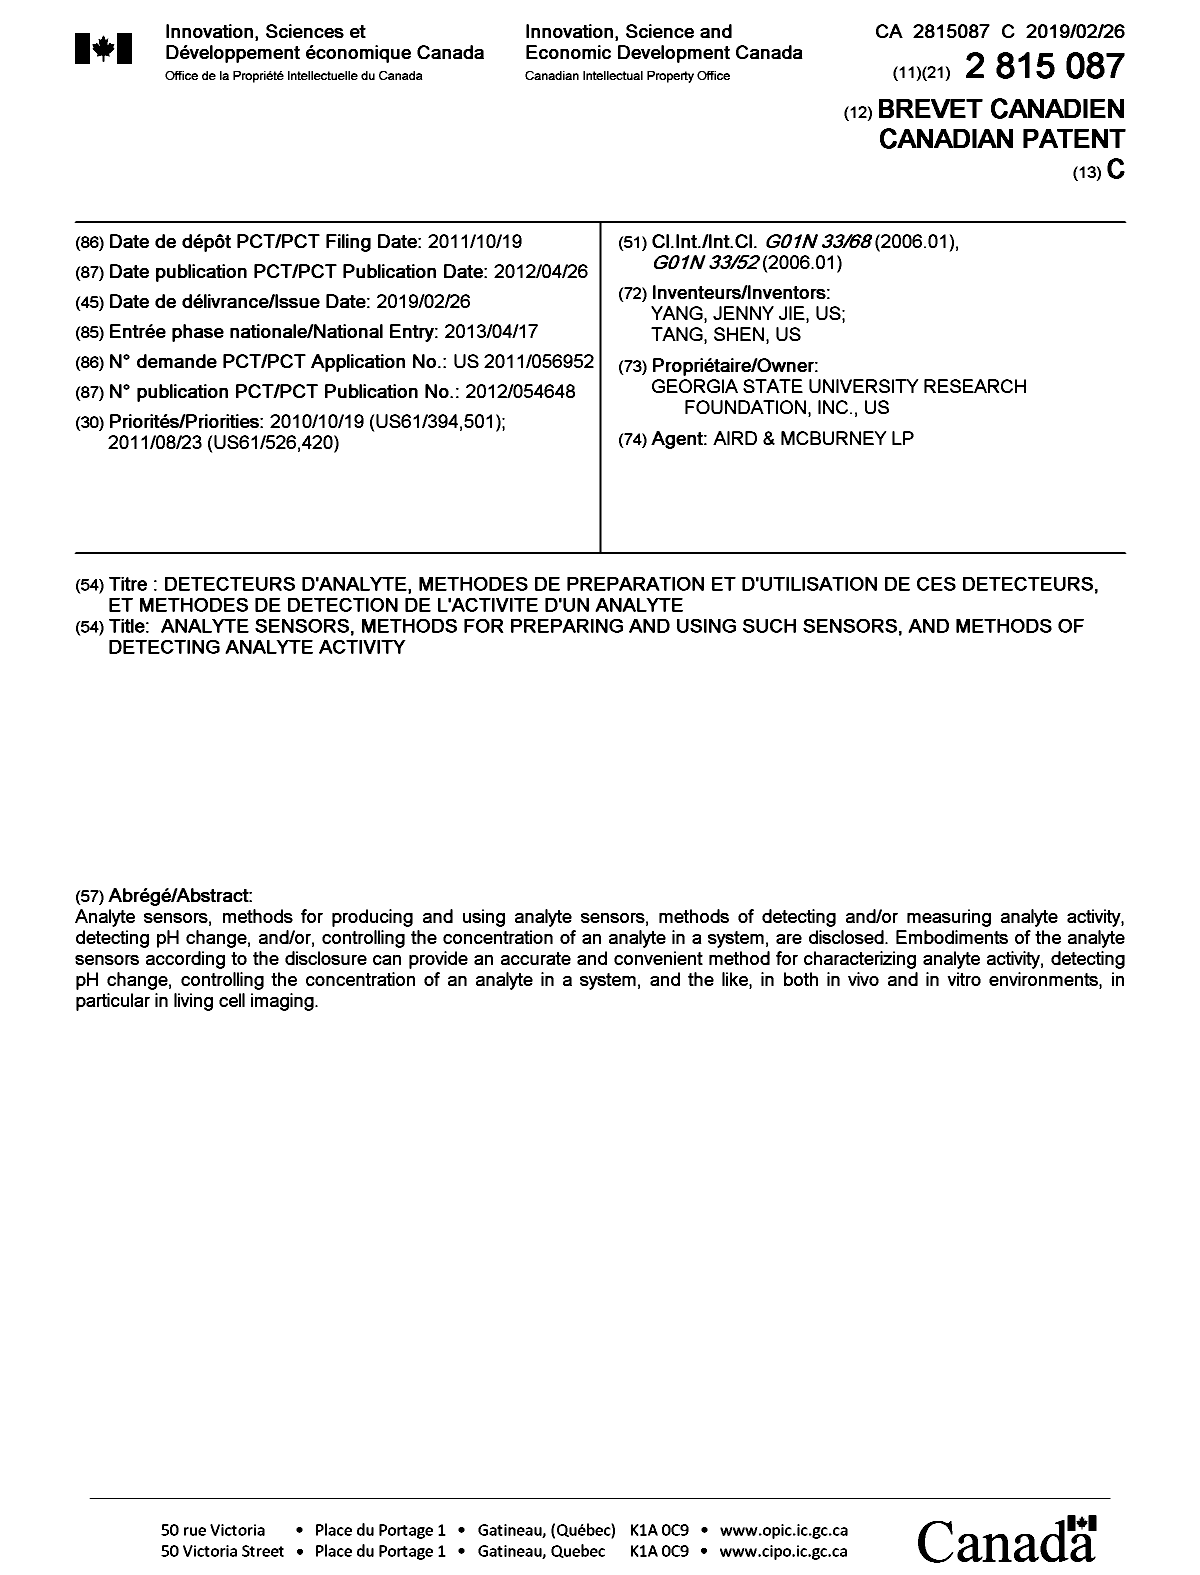 Document de brevet canadien 2815087. Page couverture 20190128. Image 1 de 1